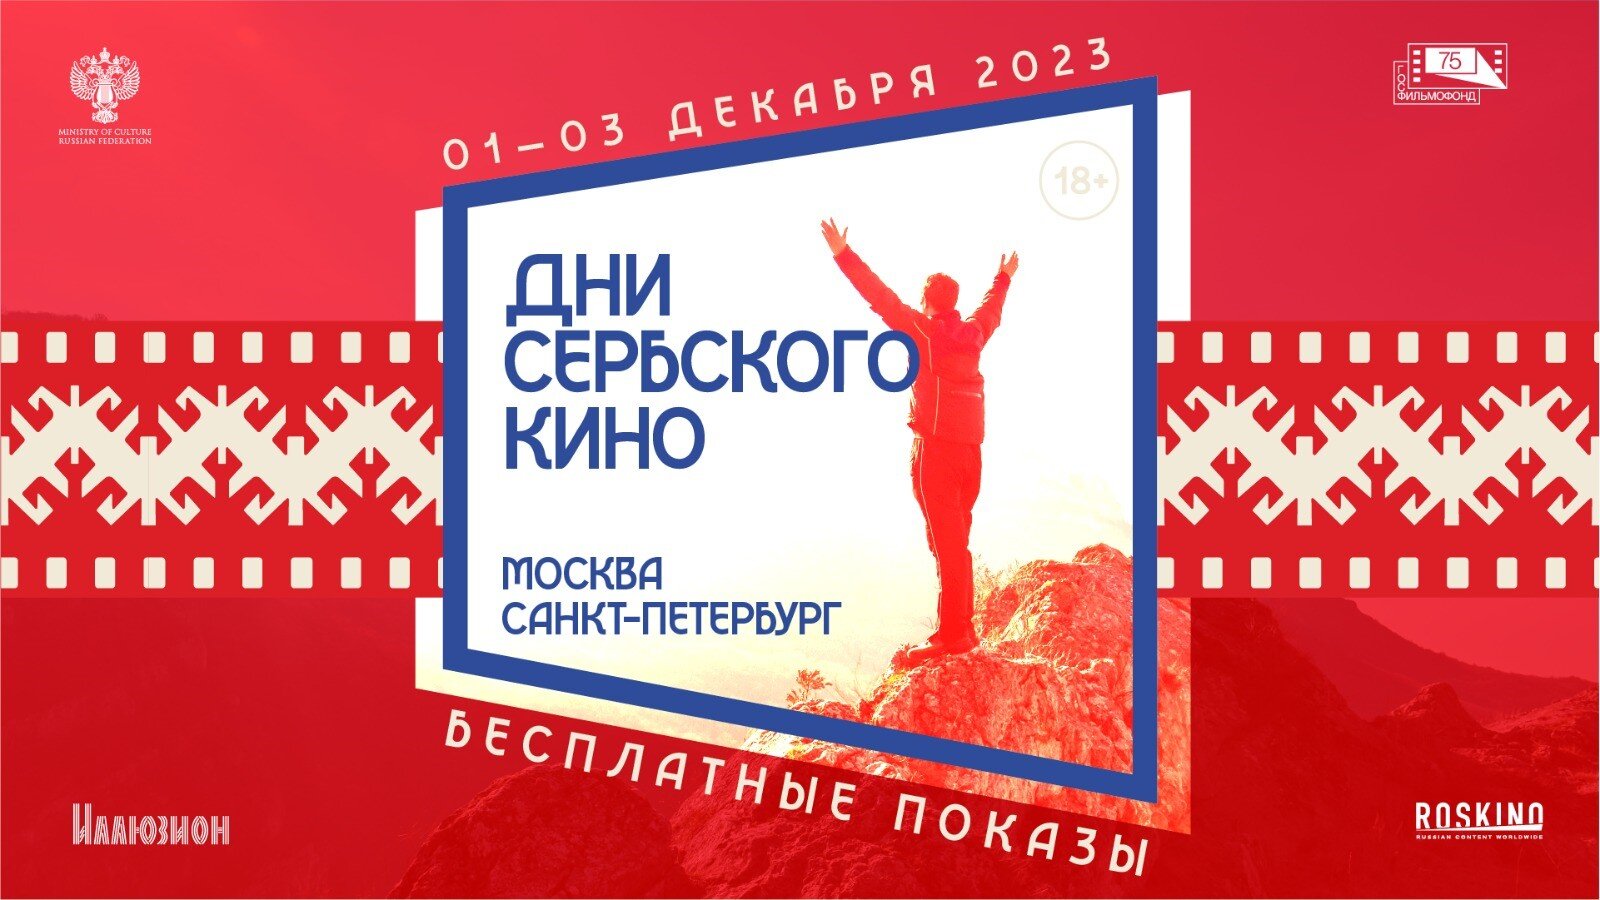 Дни сербского кино  пройдут в Москве и Санкт-Петербурге - фото 1